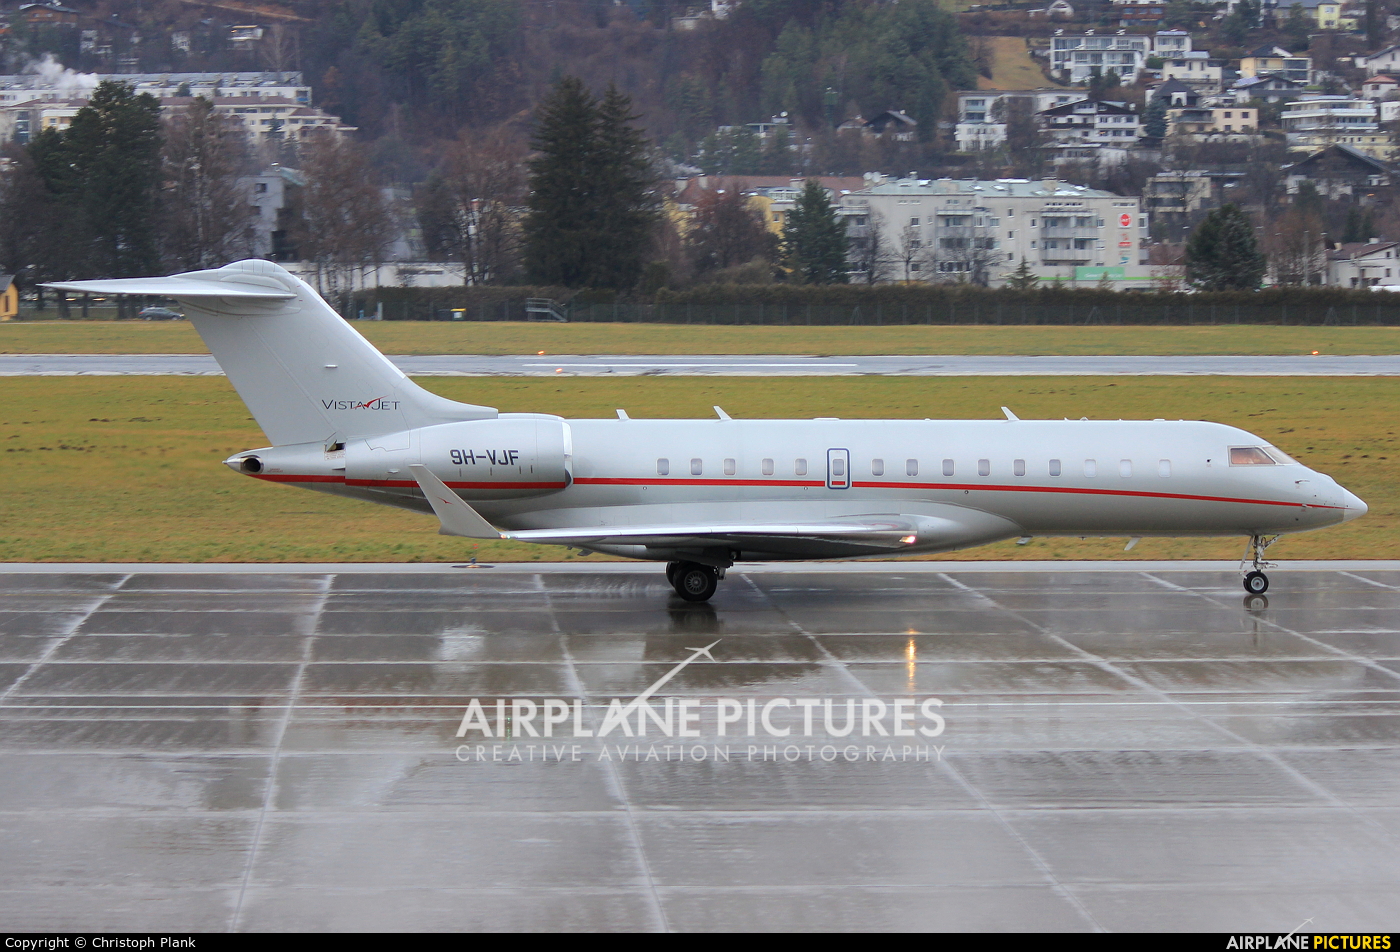 Vistajet 9H-VJF aircraft at Innsbruck